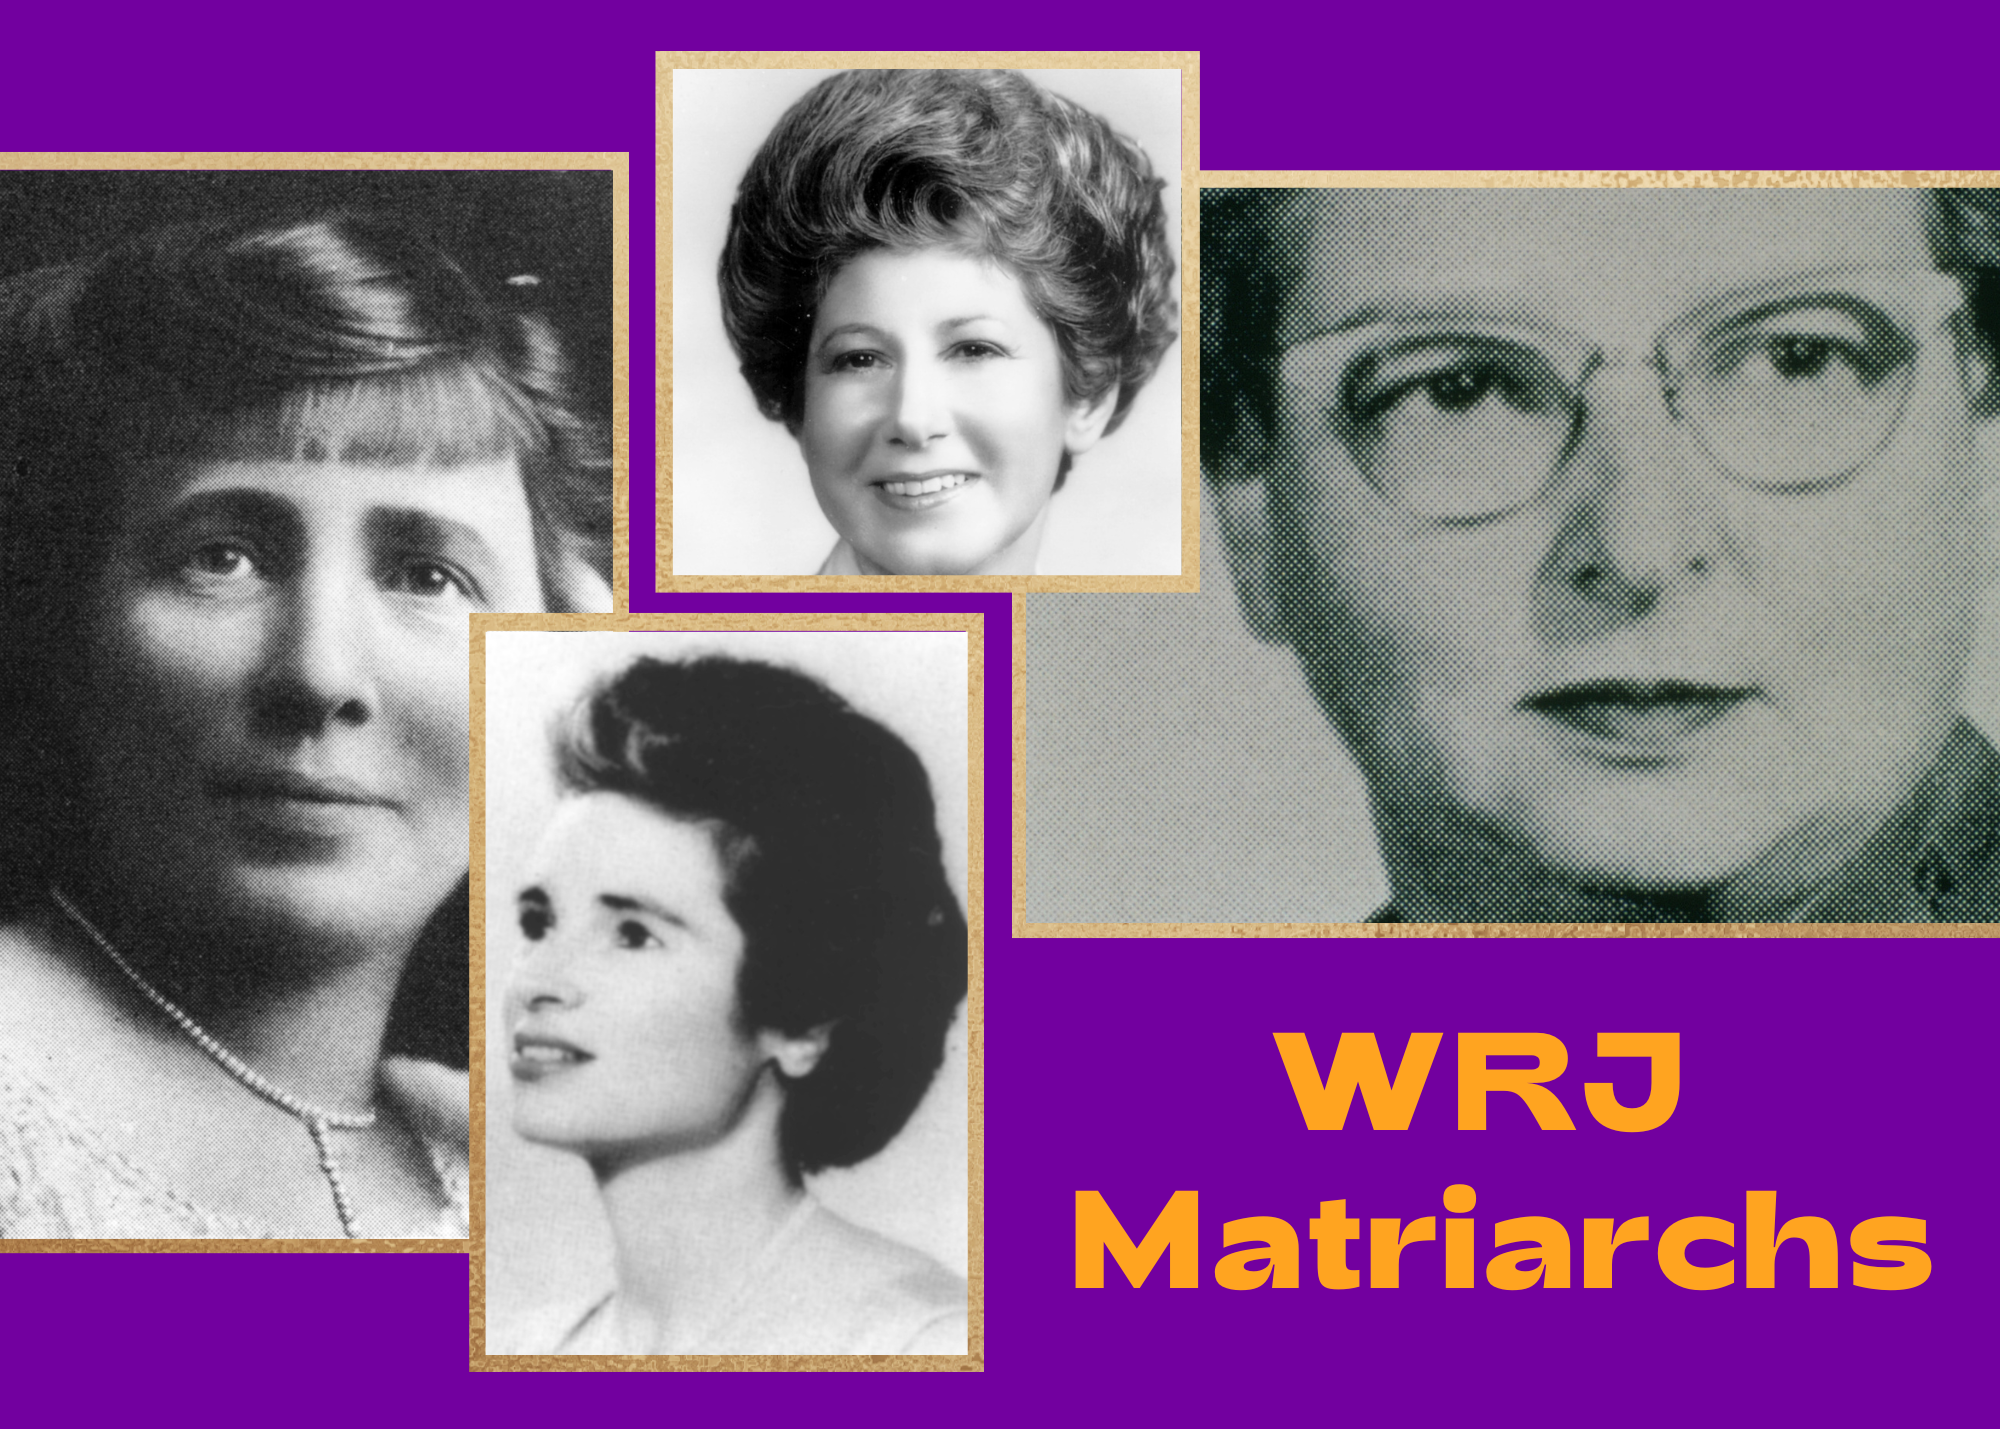 A collage of WRJ Matriarchs